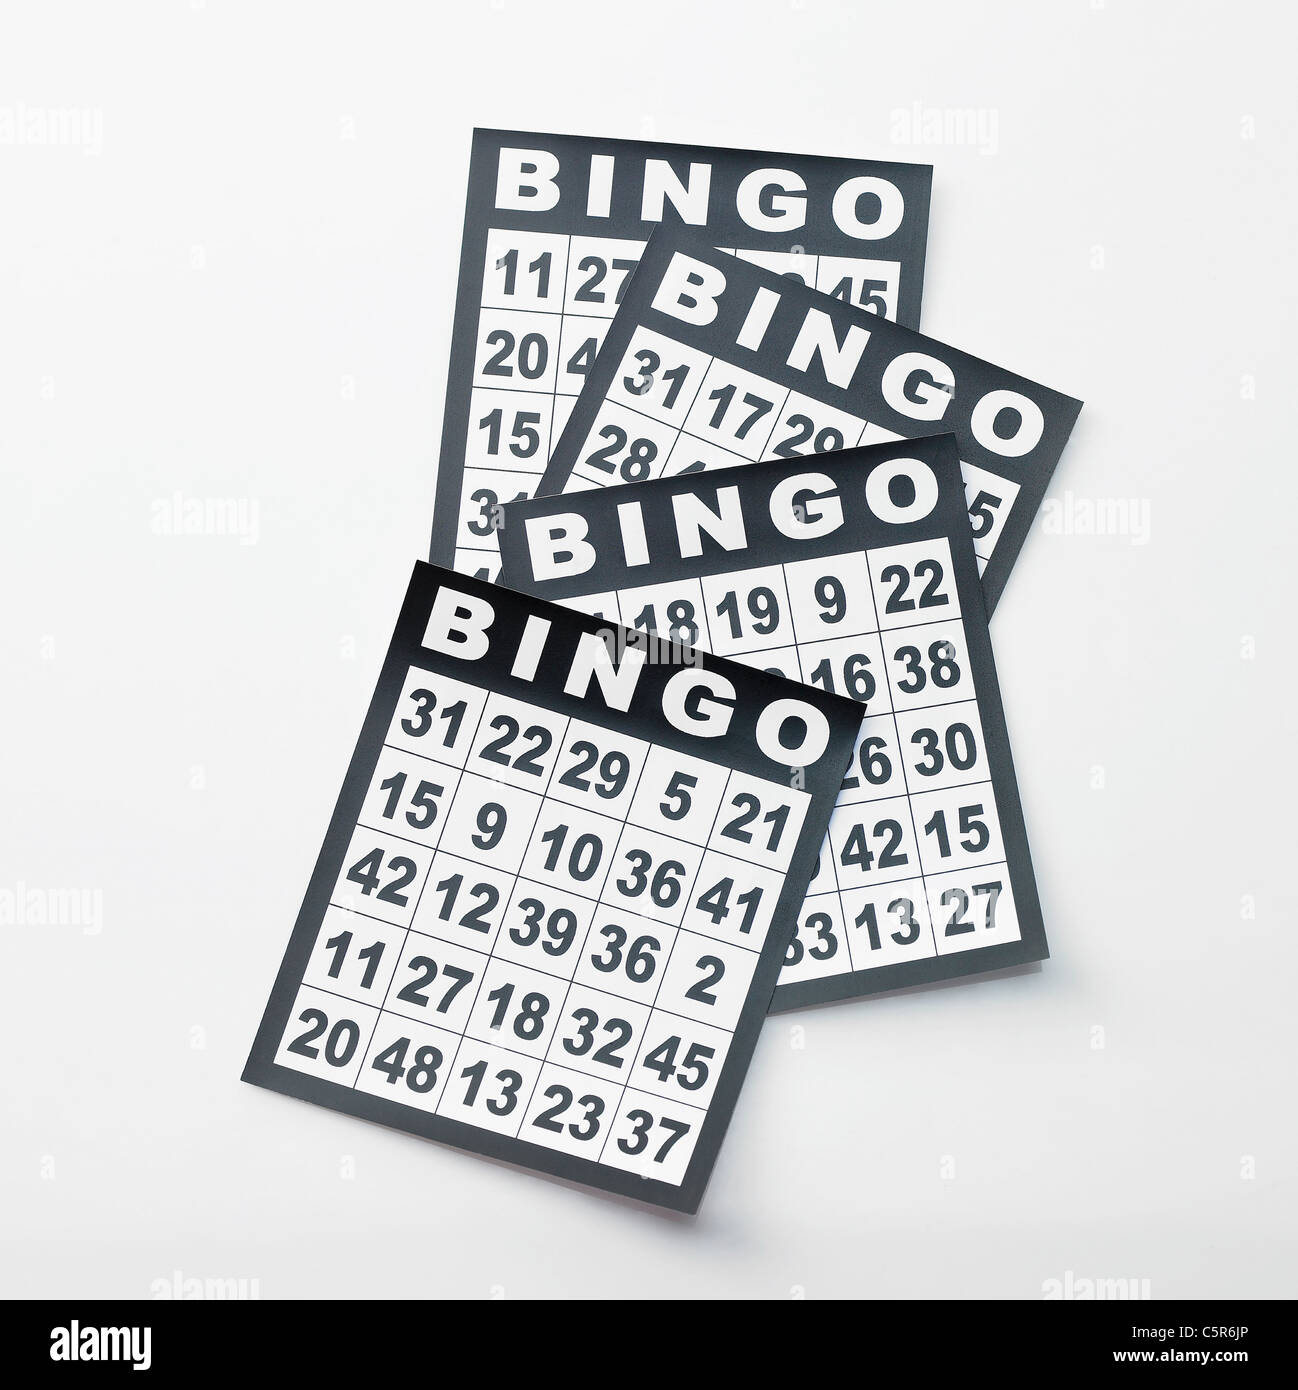 Cartes De Bingo Banque De Photographies Et Dimages à Haute Résolution Alamy 